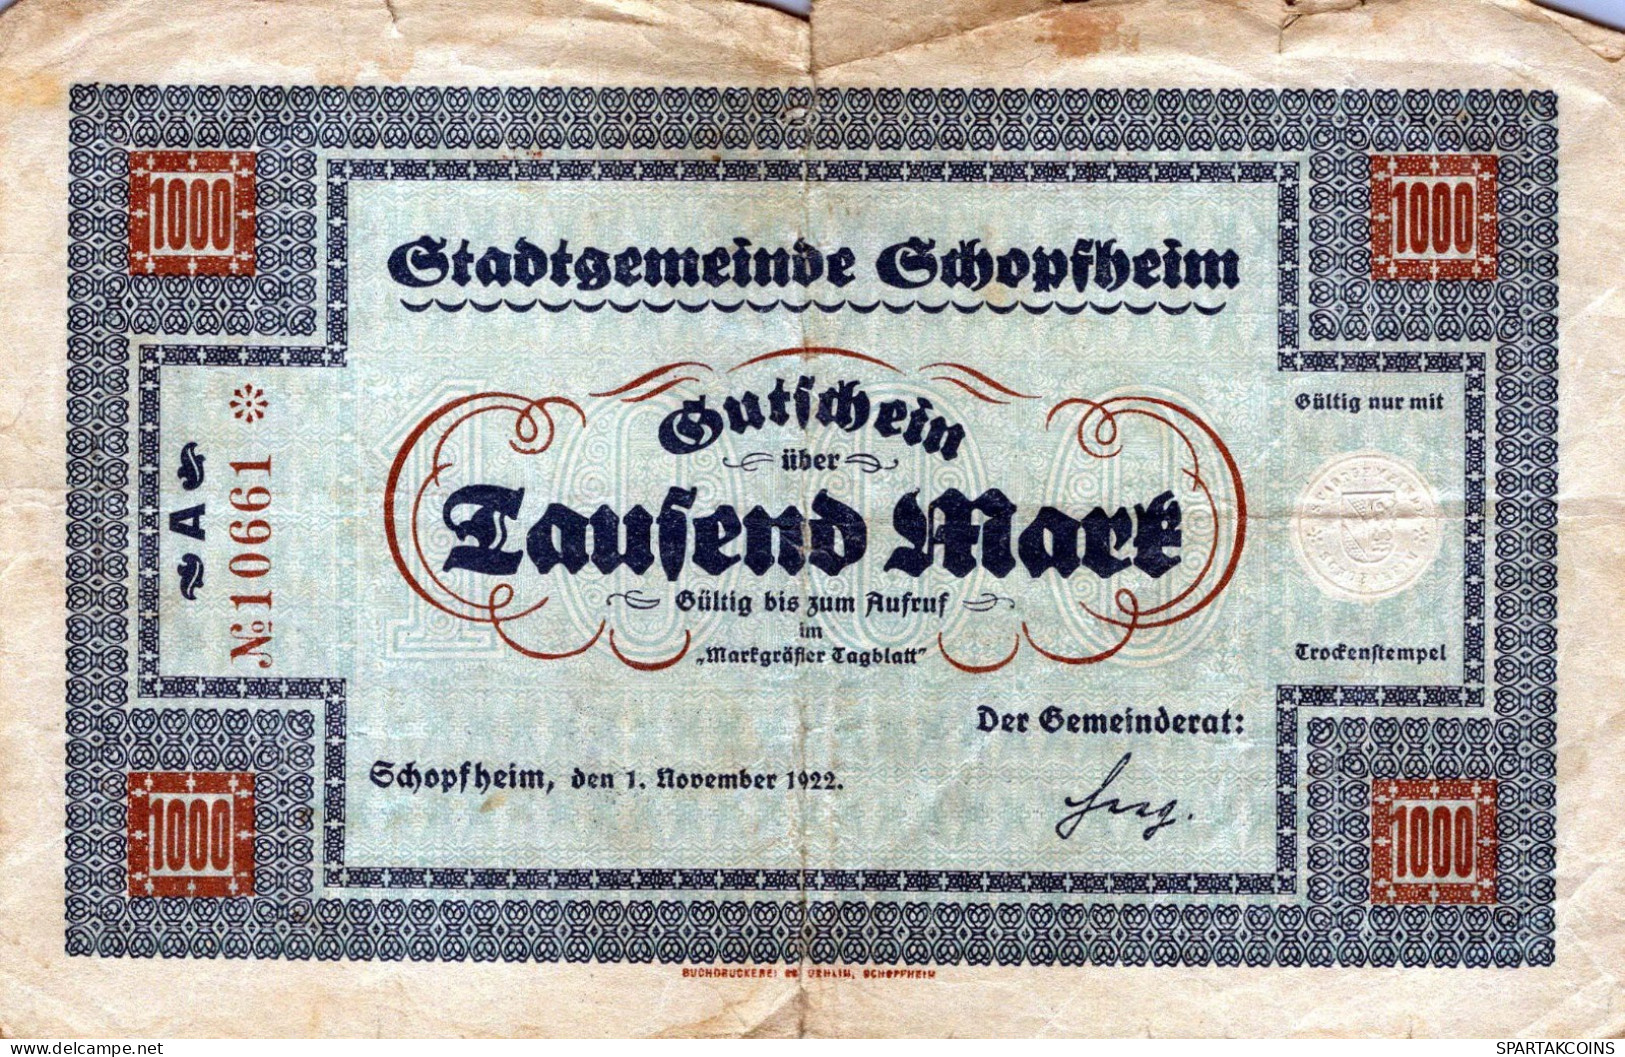 1000 MARK 1922 Stadt SCHOPFHEIM Baden DEUTSCHLAND Notgeld Papiergeld Banknote #PK960 - [11] Emisiones Locales